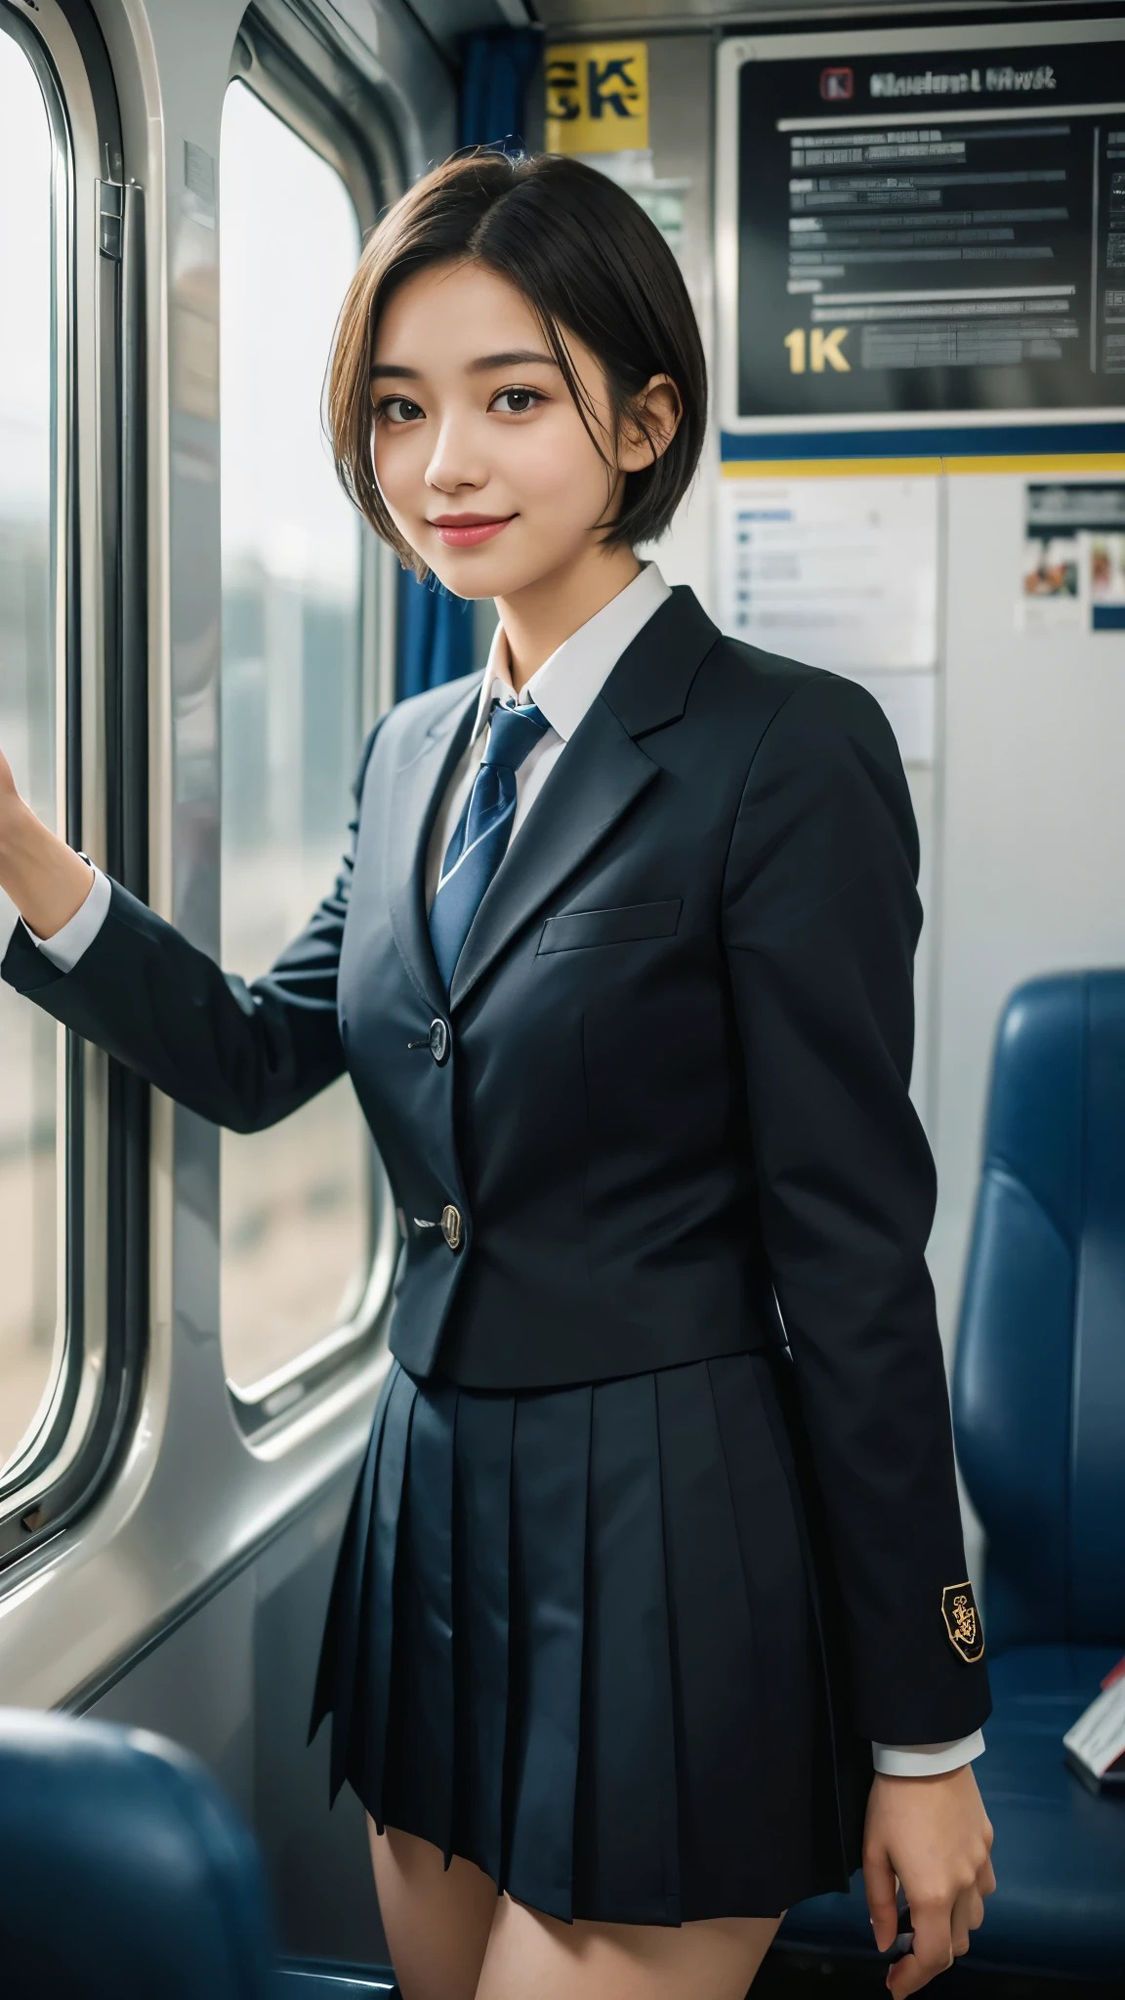 スケスケカメラで電車の制服美女を撮影した結果_8